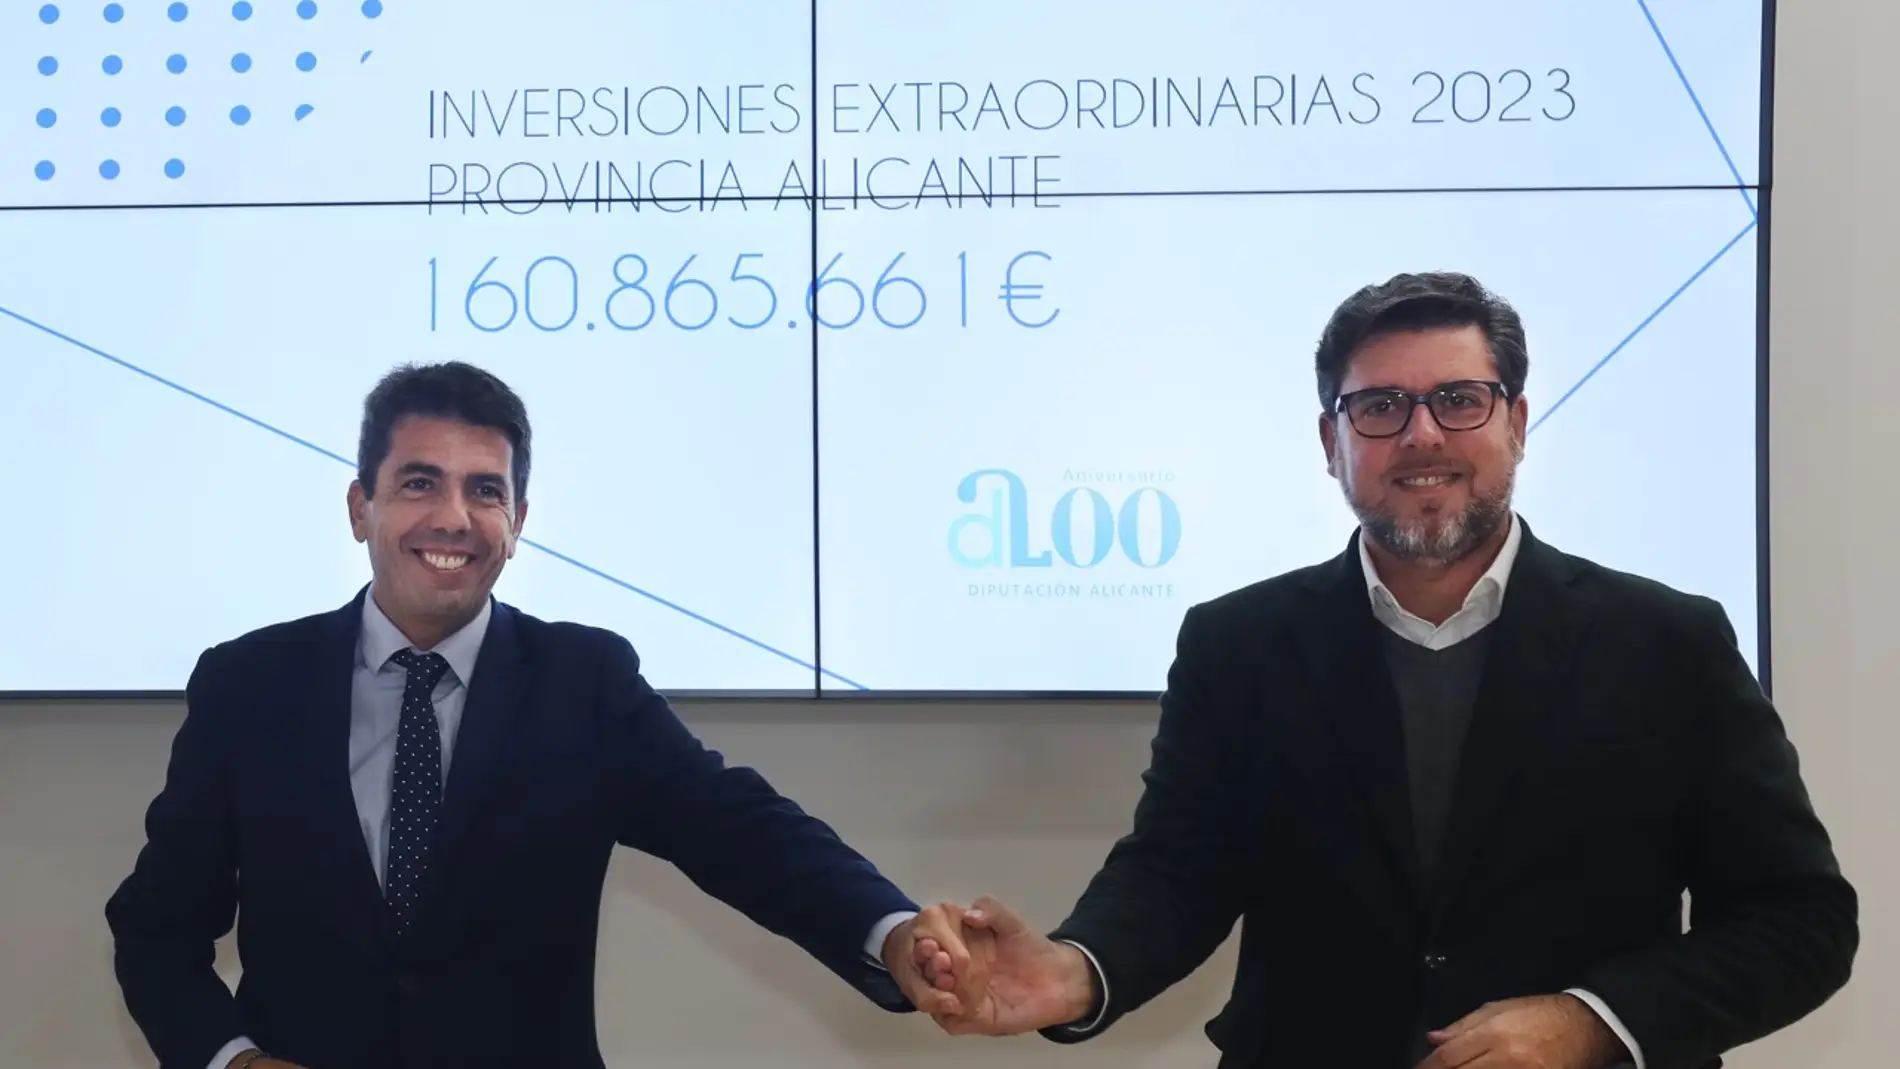 Carlos Mazón (Pp) y Javier Gutiérrez (Cs) en la presentación de los fondos extraordinarios 